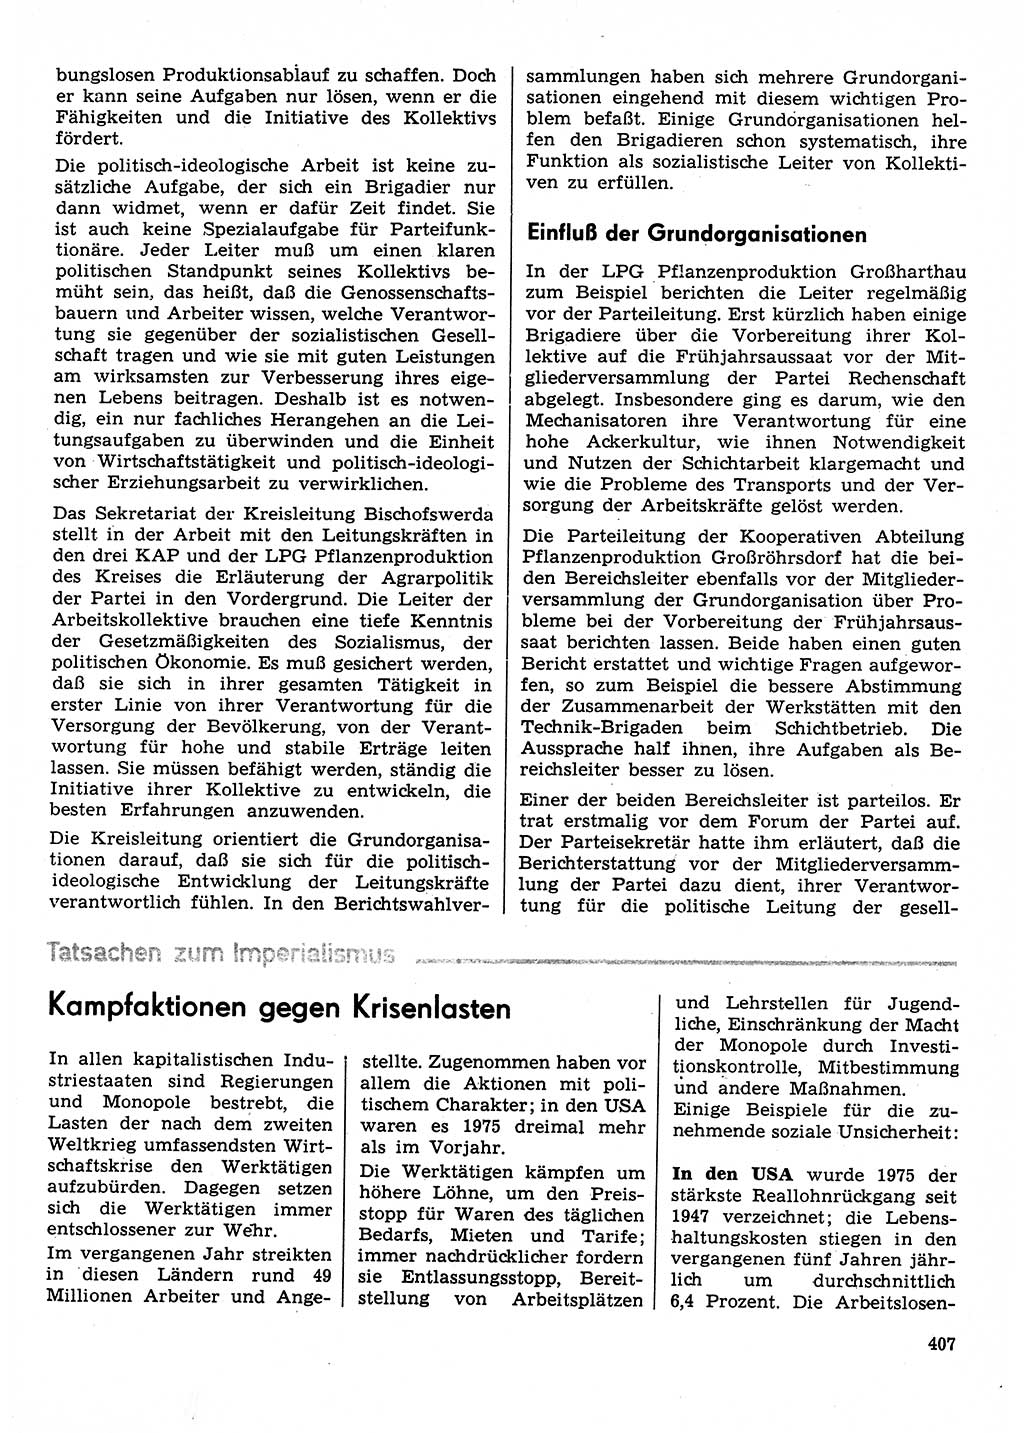 Neuer Weg (NW), Organ des Zentralkomitees (ZK) der SED (Sozialistische Einheitspartei Deutschlands) für Fragen des Parteilebens, 31. Jahrgang [Deutsche Demokratische Republik (DDR)] 1976, Seite 407 (NW ZK SED DDR 1976, S. 407)